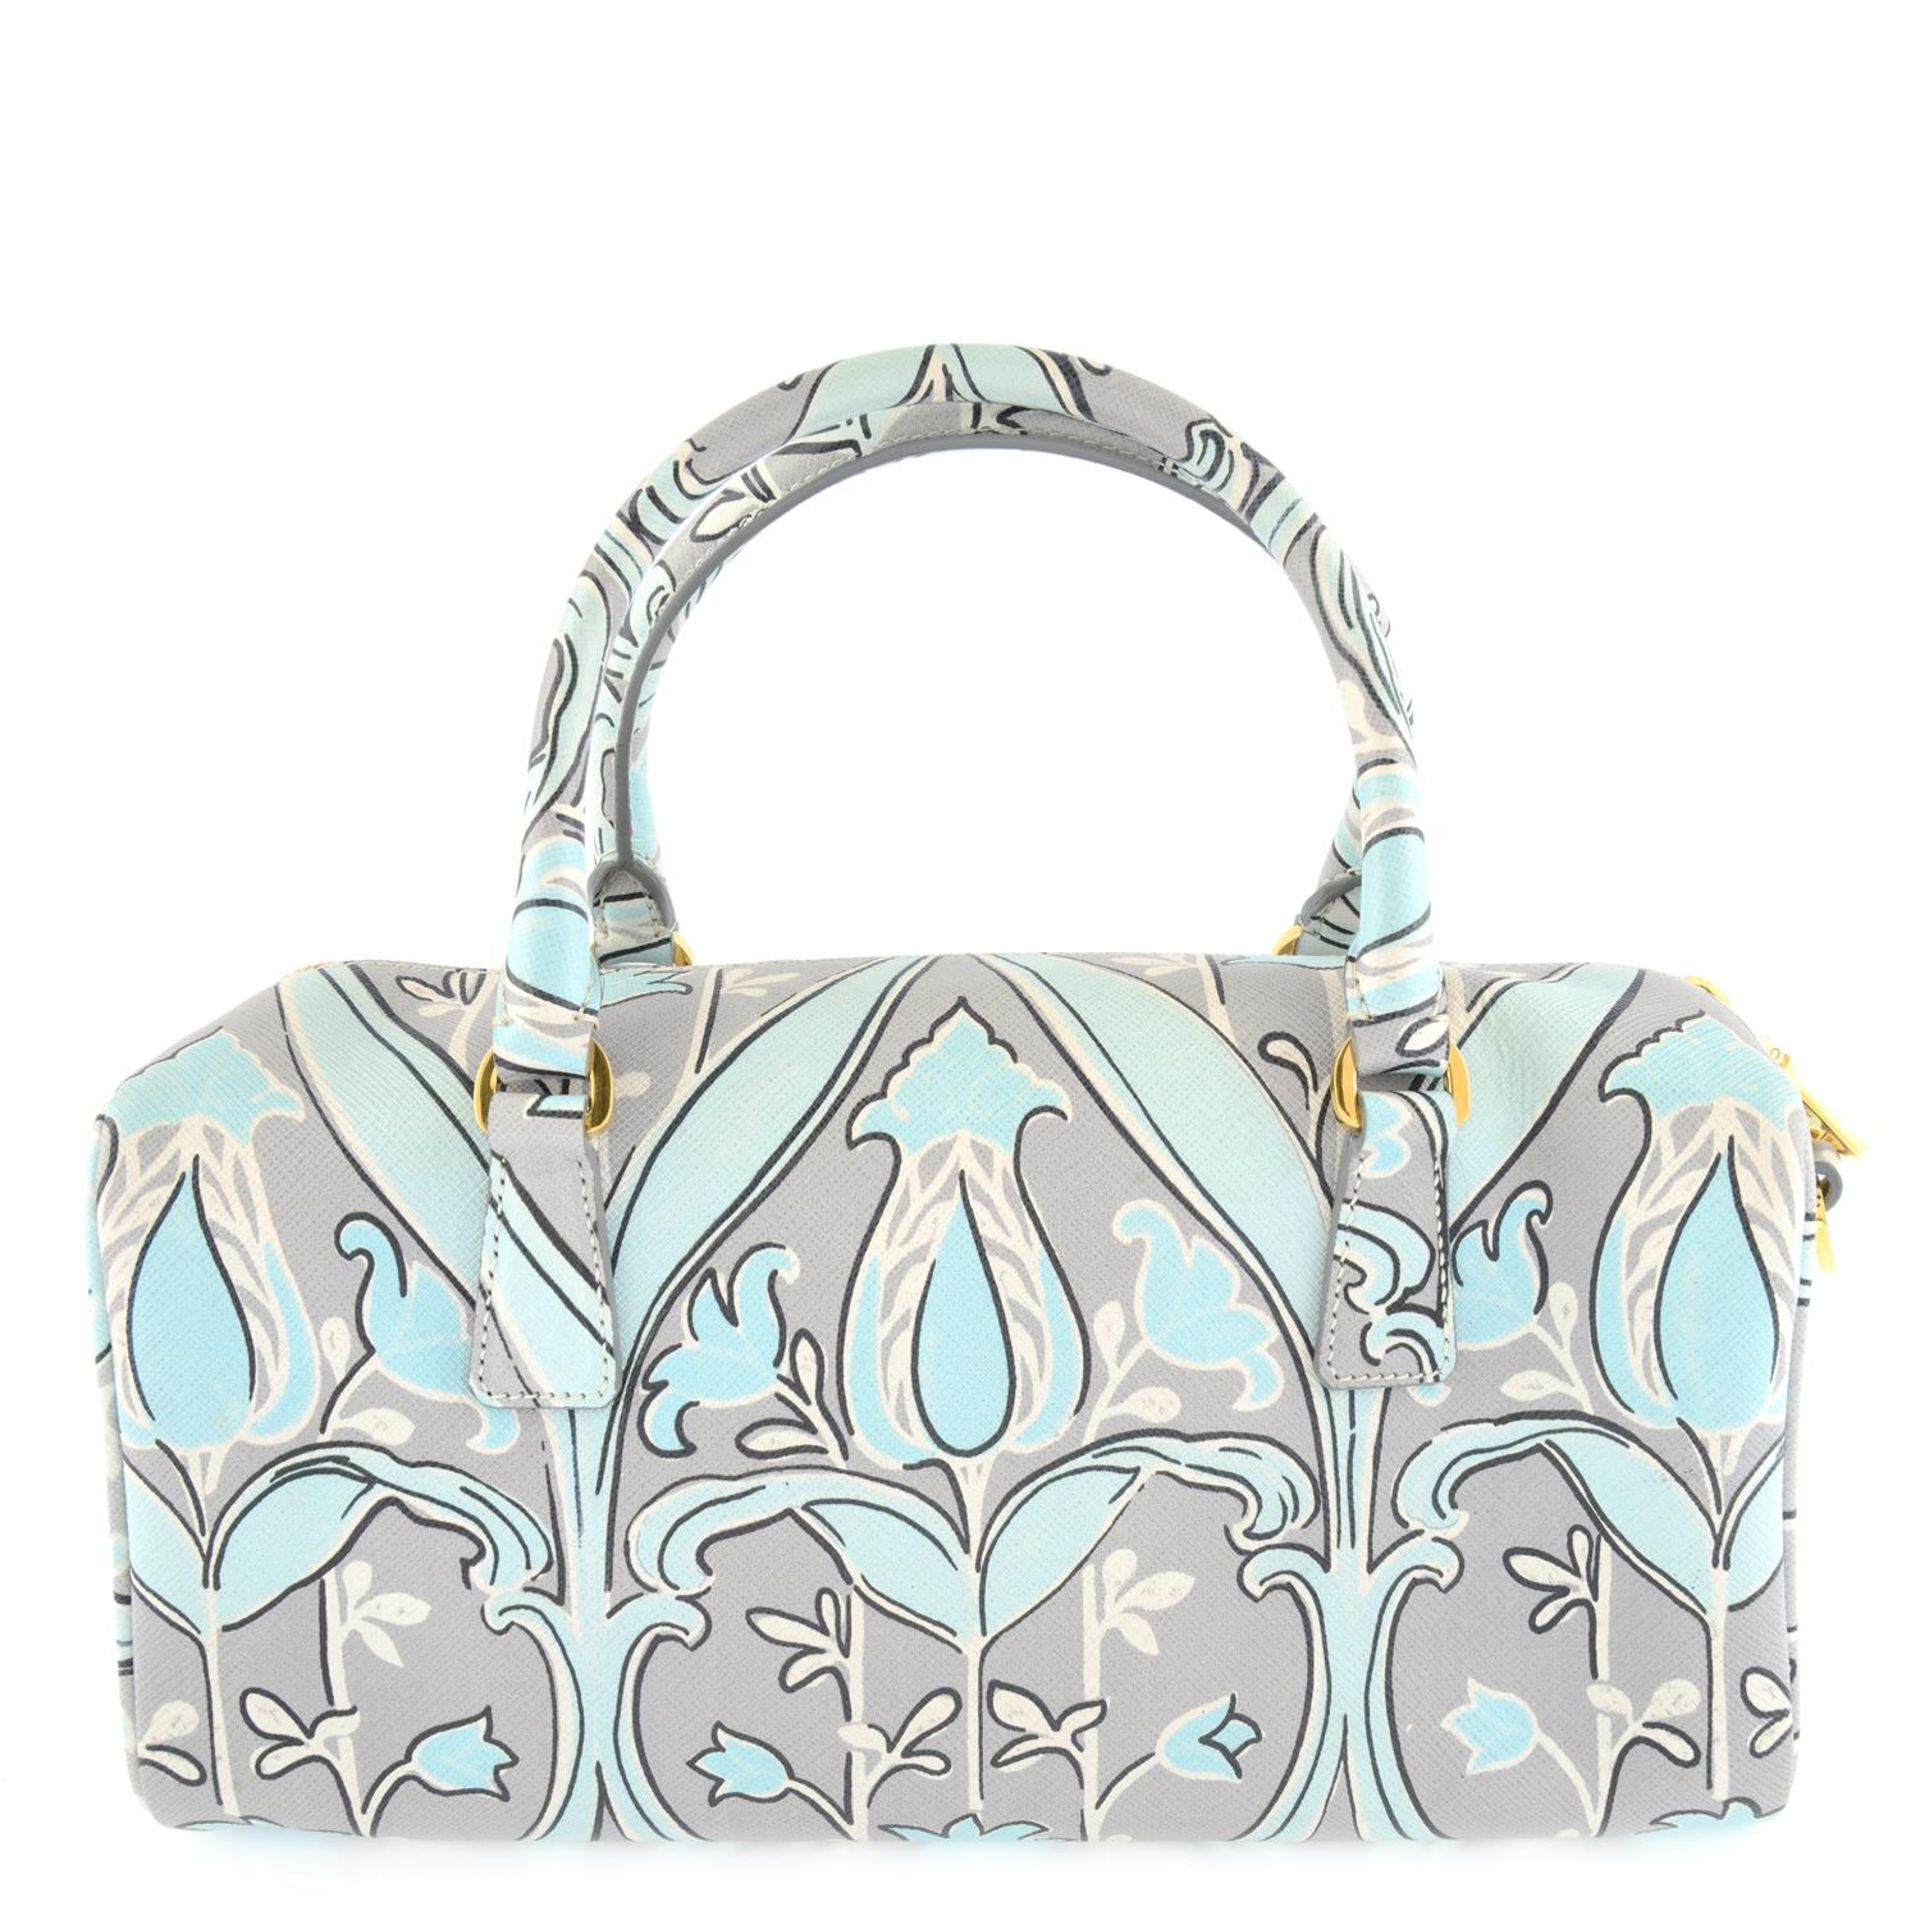 Prada - Saffiano floral print bag. - Image 2 of 5